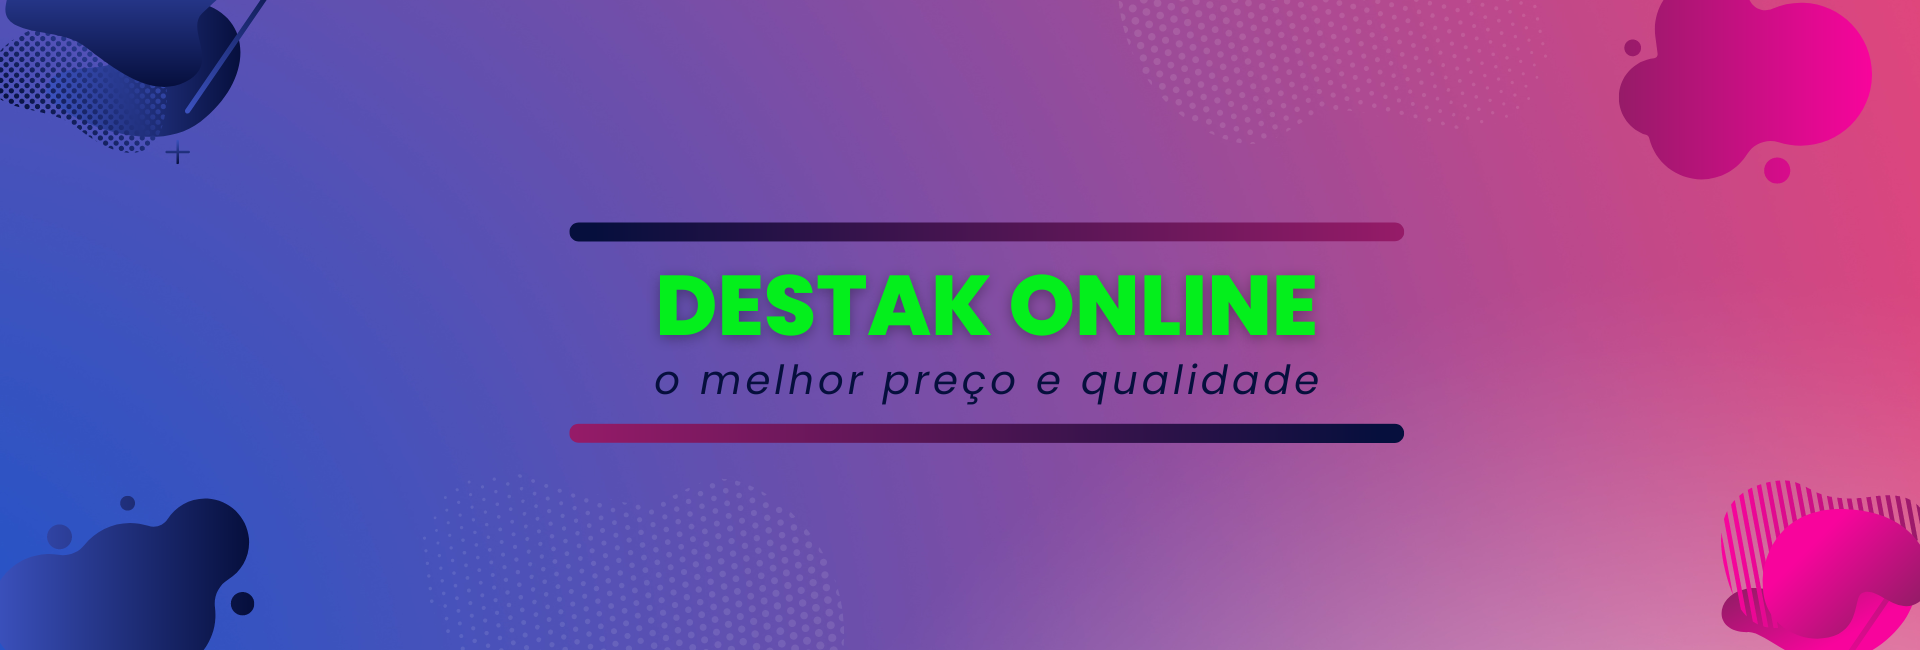 Destak Online